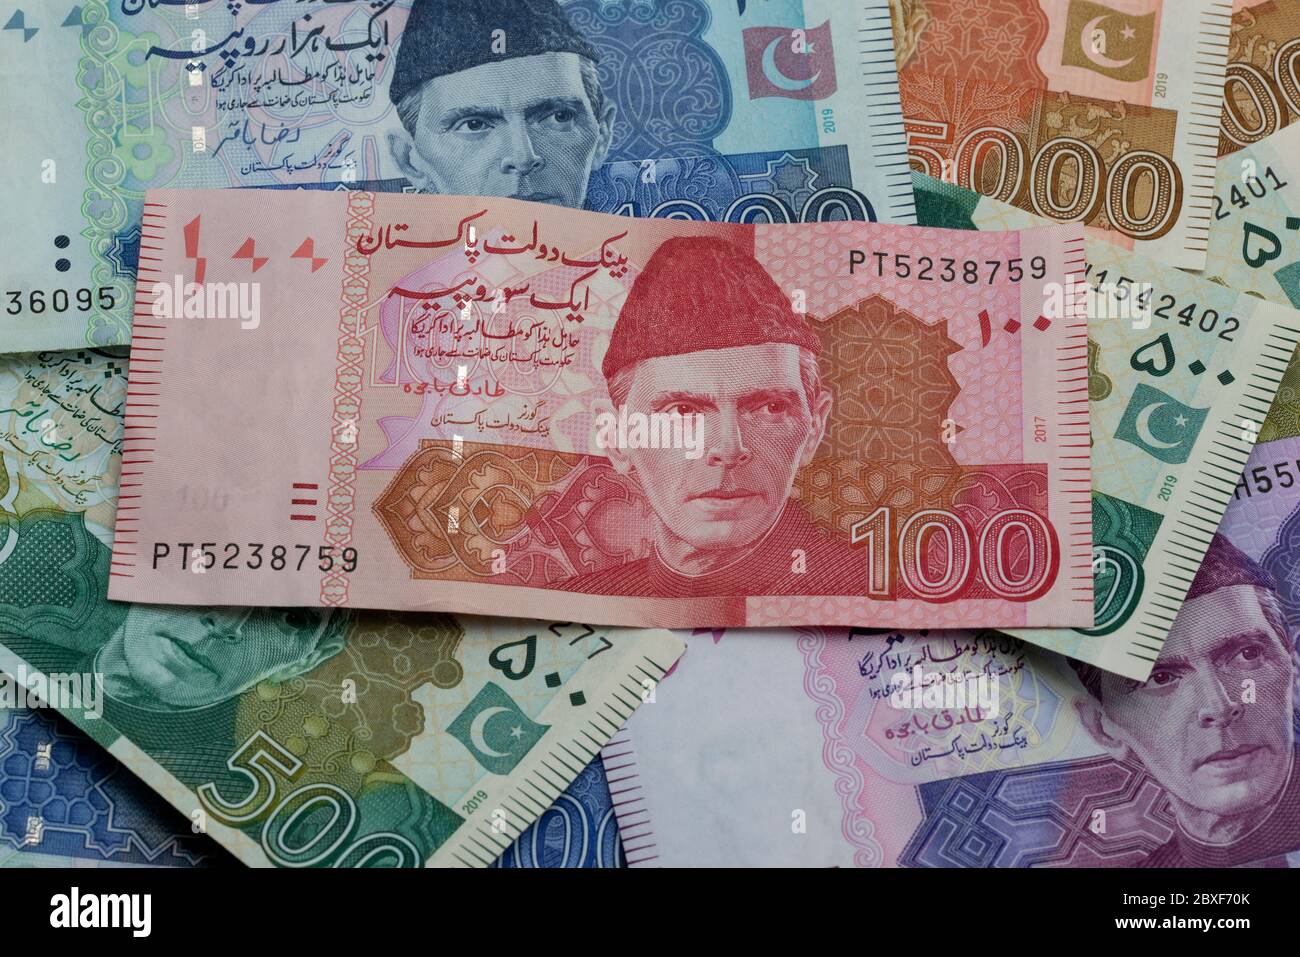 Пакистанские рупии в рубли. Валюта Пакистана. Пакистане – пакистанская рупия. Пакистан деньги рупии. 100 Пакистанских рупий.